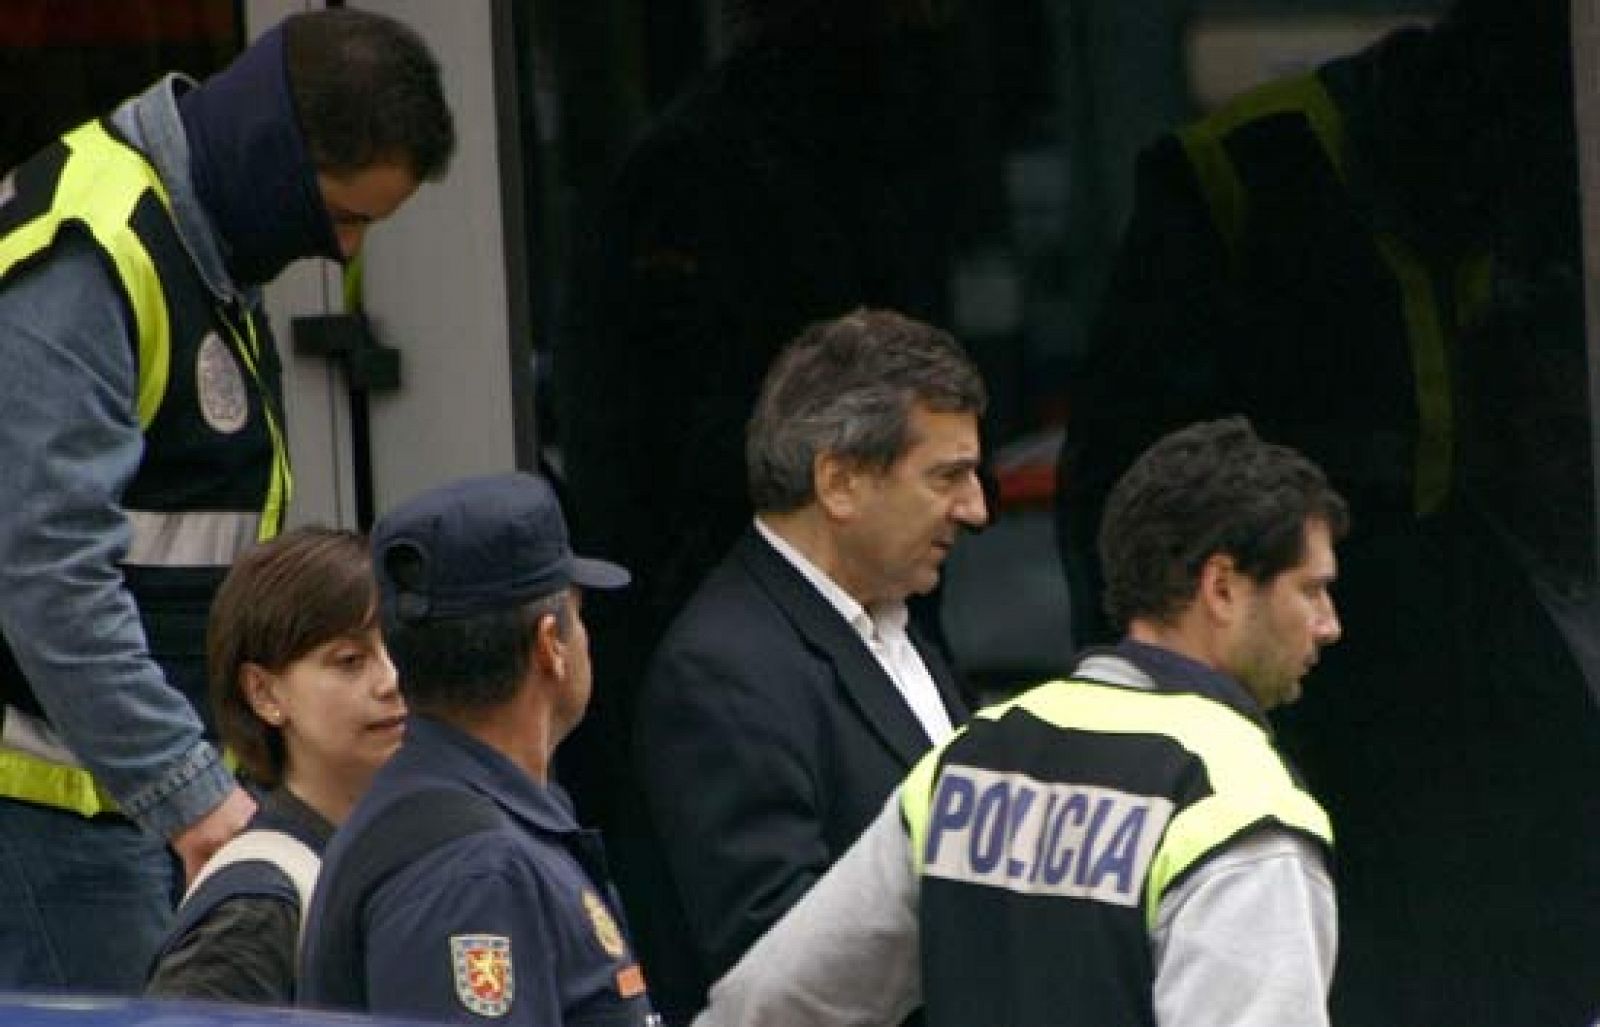 Comando Actualidad investiga la situación vivida en Coslada bajo la presunta trama de corrupción policial (17/05/08).